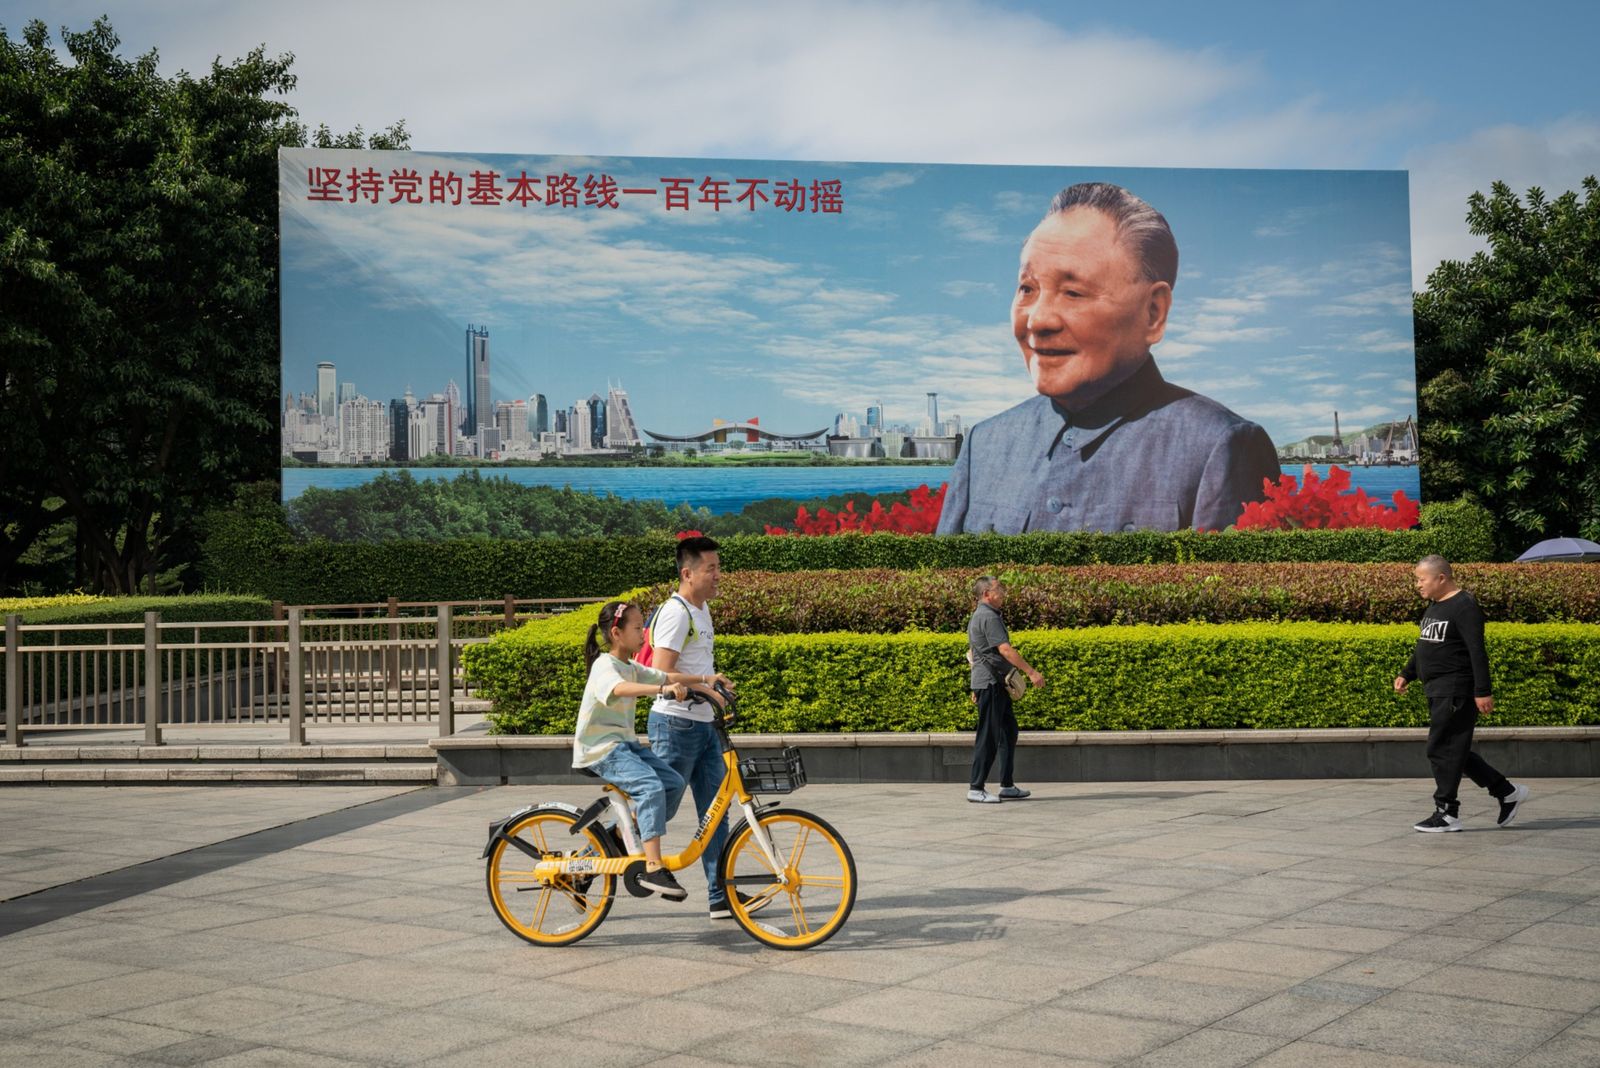 يسيرون في ساحة أمام صورة للزعيم الصيني الراحل دينغ شياو بينغ في مدينة شينزن - 21 نوفمبر 2020 - Bloomberg